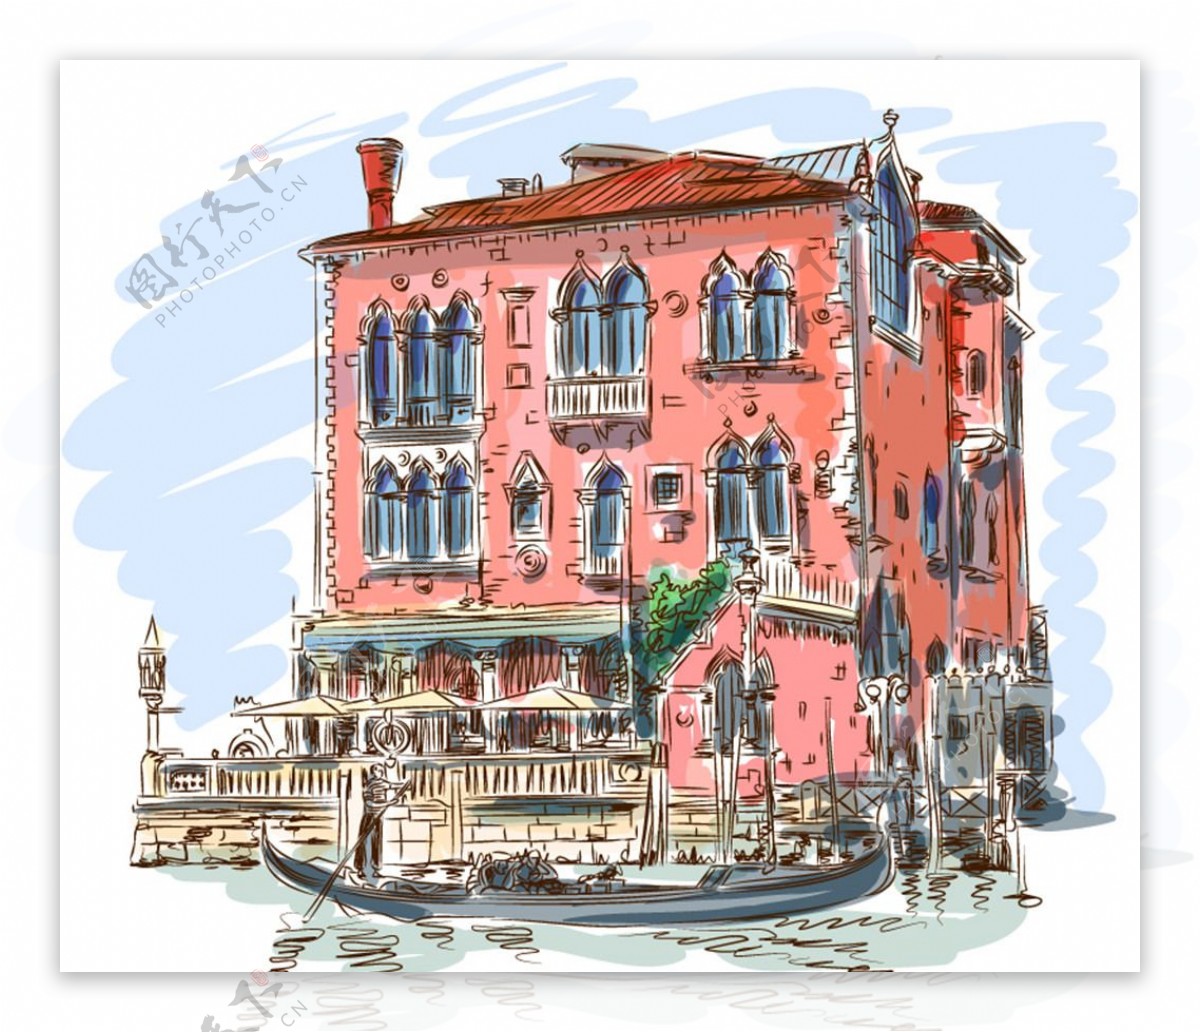 水彩绘威尼斯楼房与船矢量素材